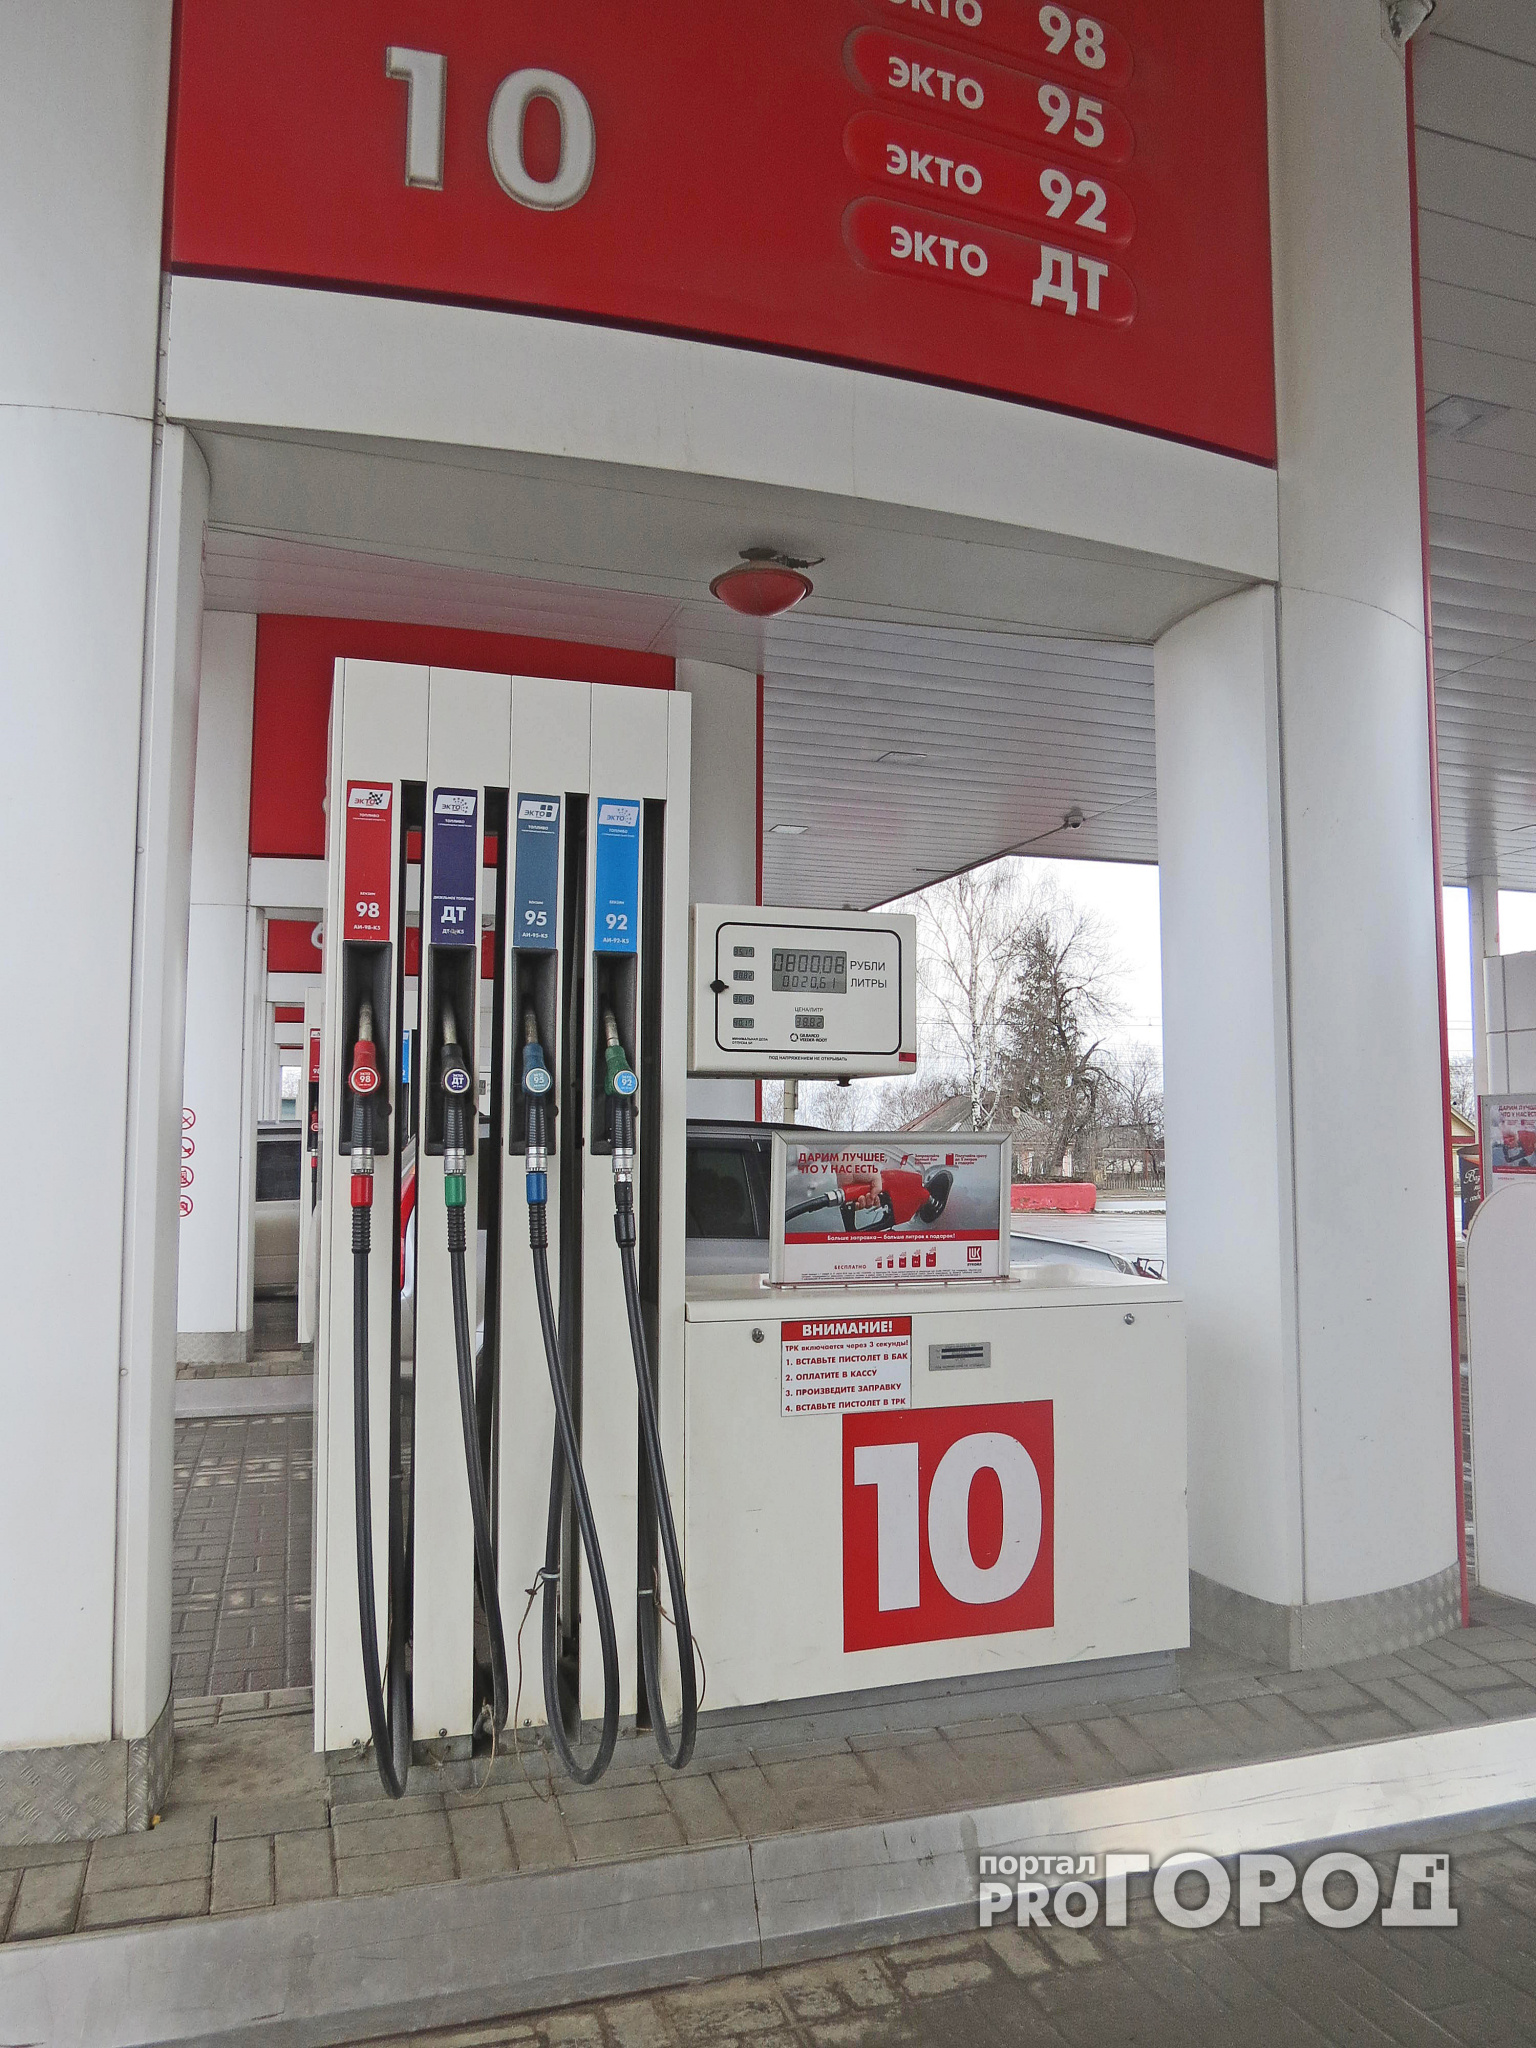 В Нижнем Новгороде изменилась цена на бензин